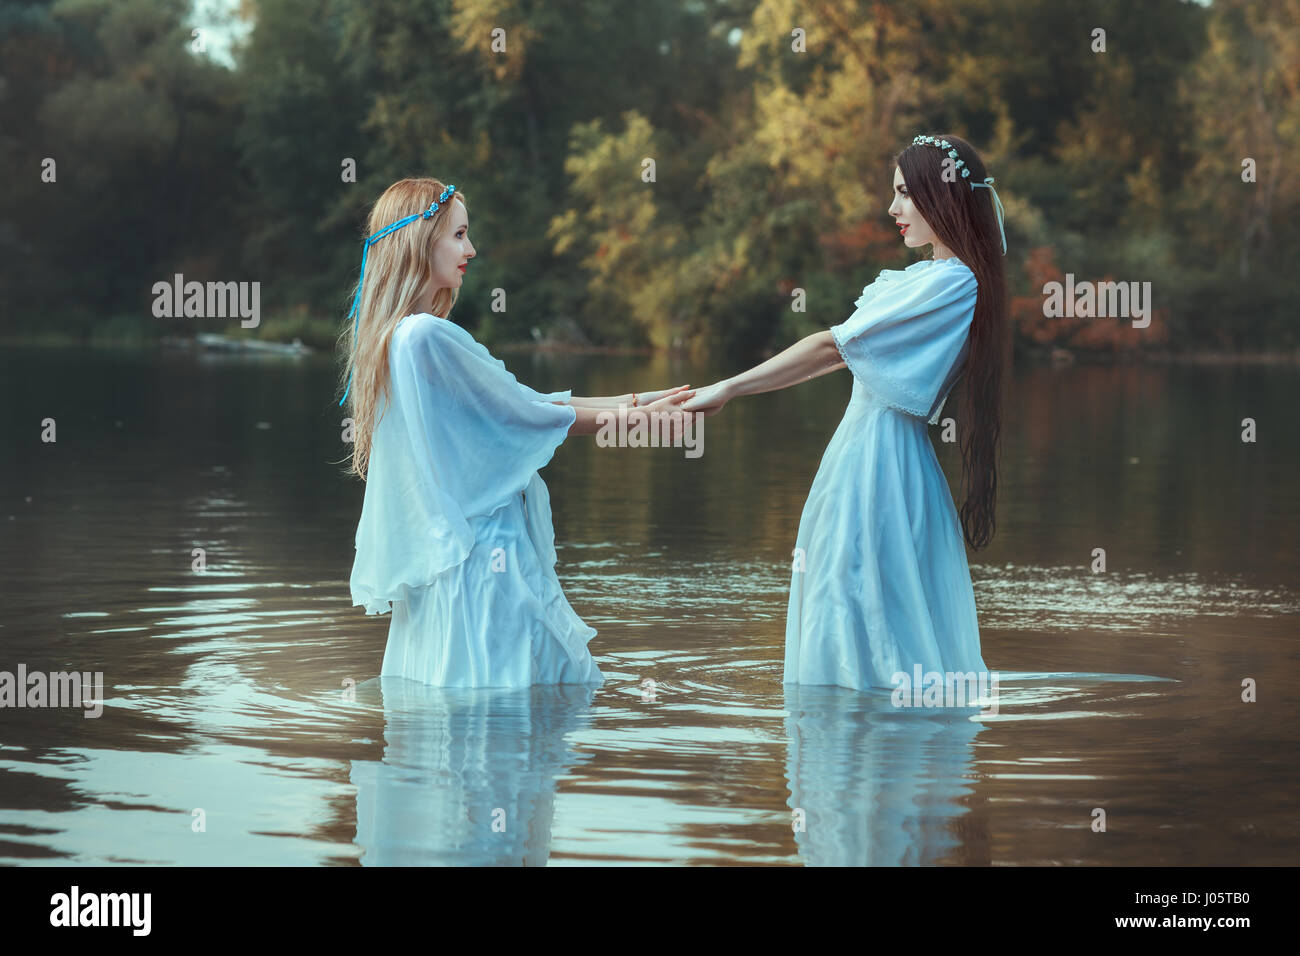 Zwei Frauen Hand in Hand, sie sind gekleidet in weißen Kleidern und im Wasser sind. Stockfoto